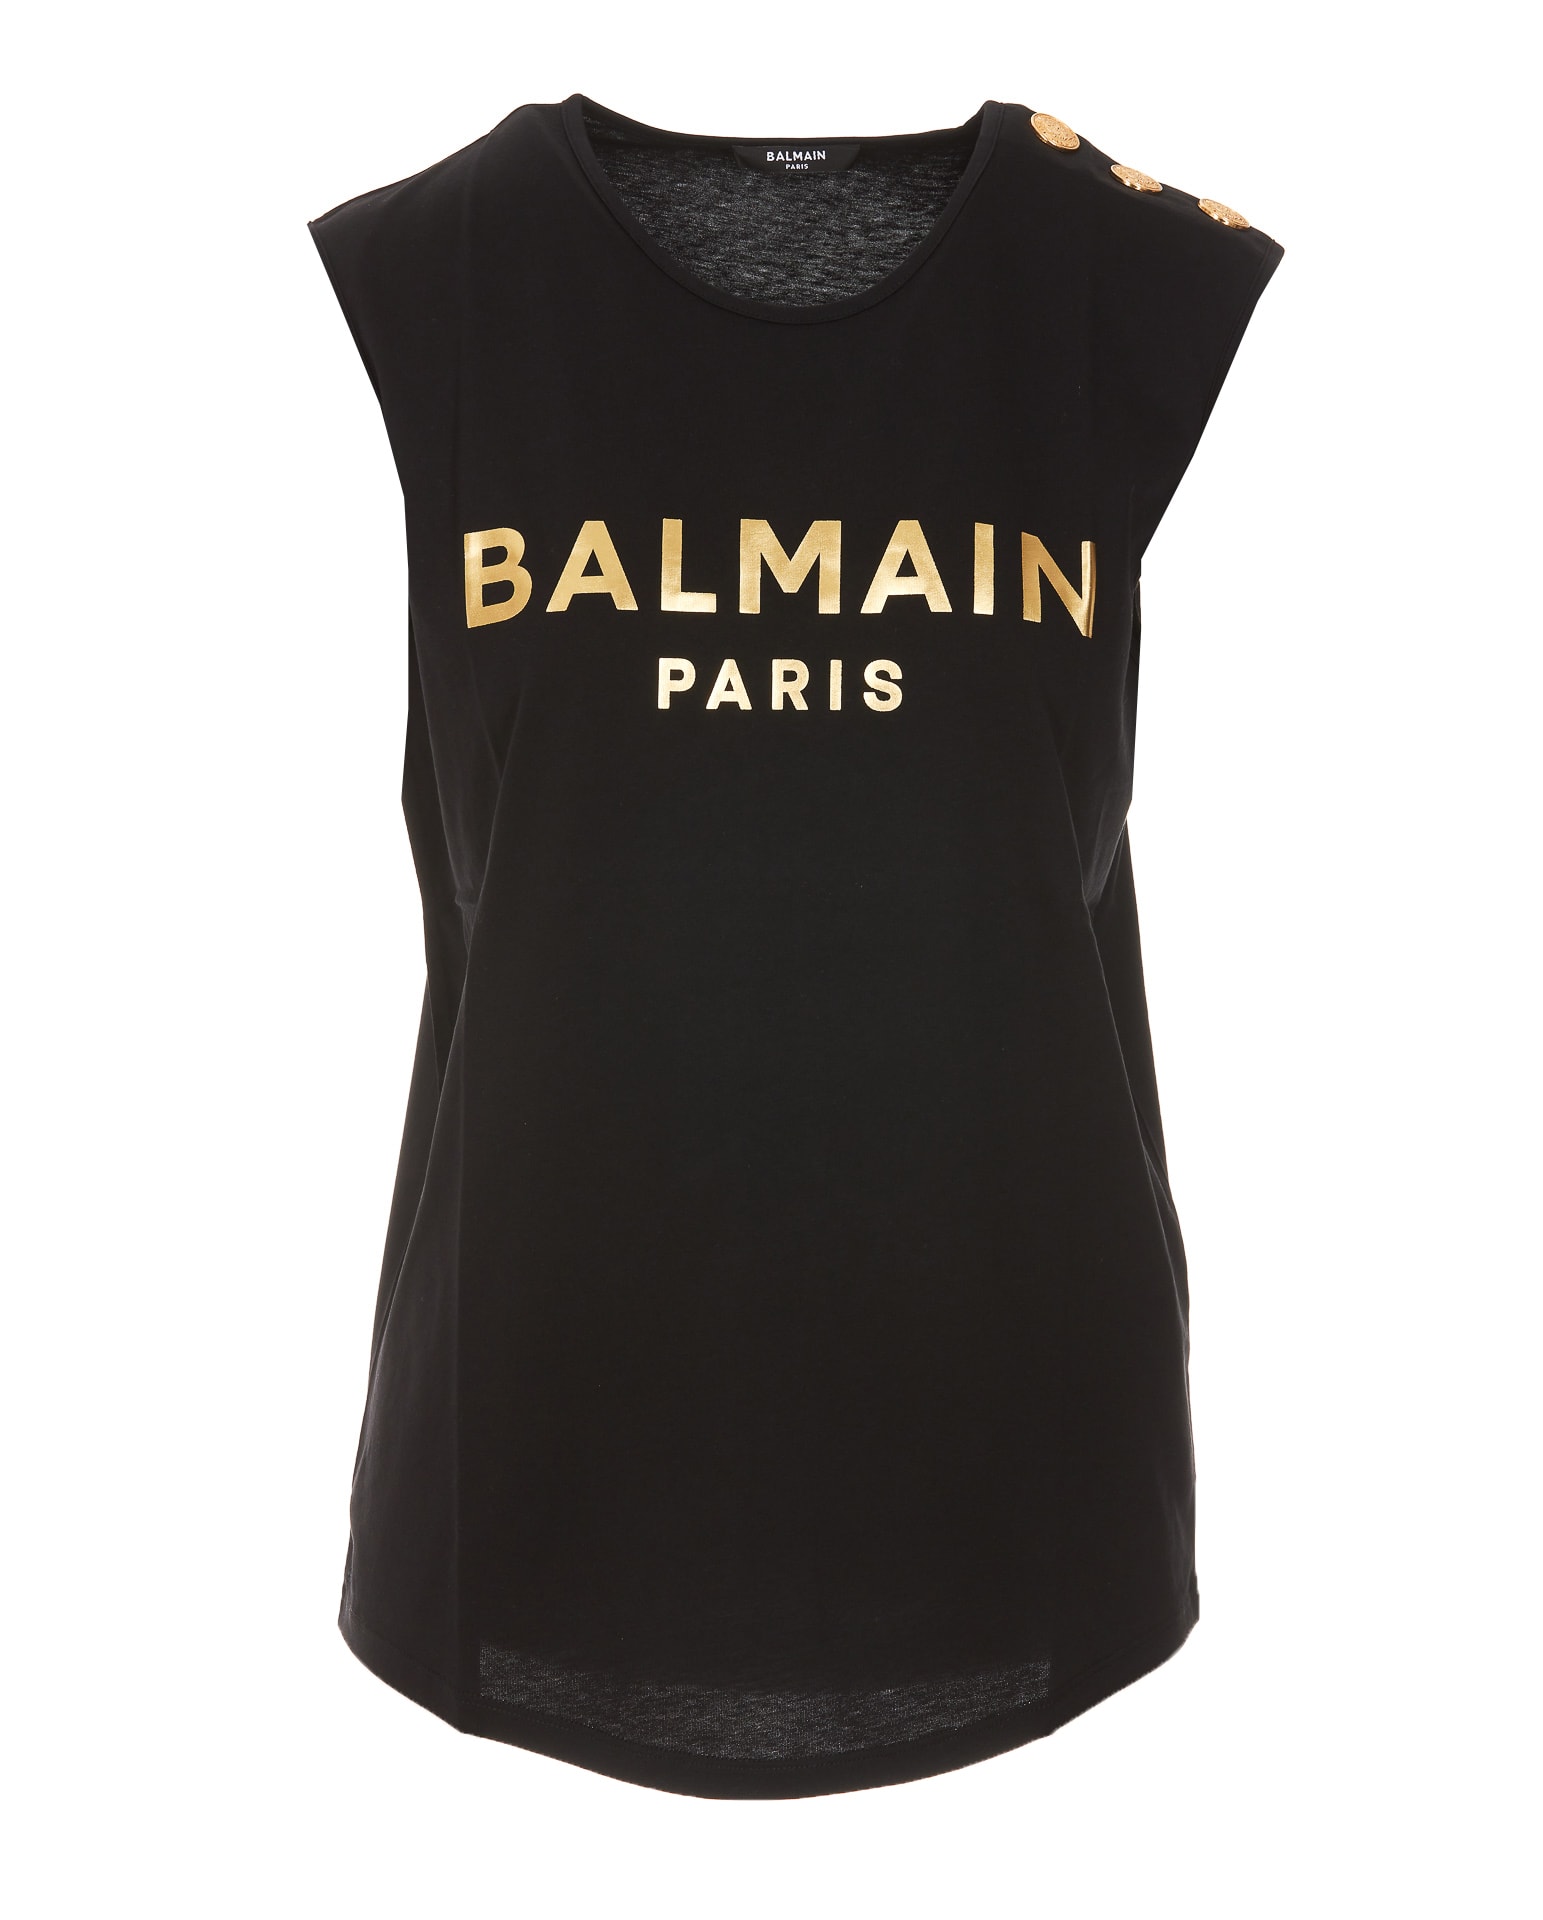 Balmain Paris Logo Tank Top